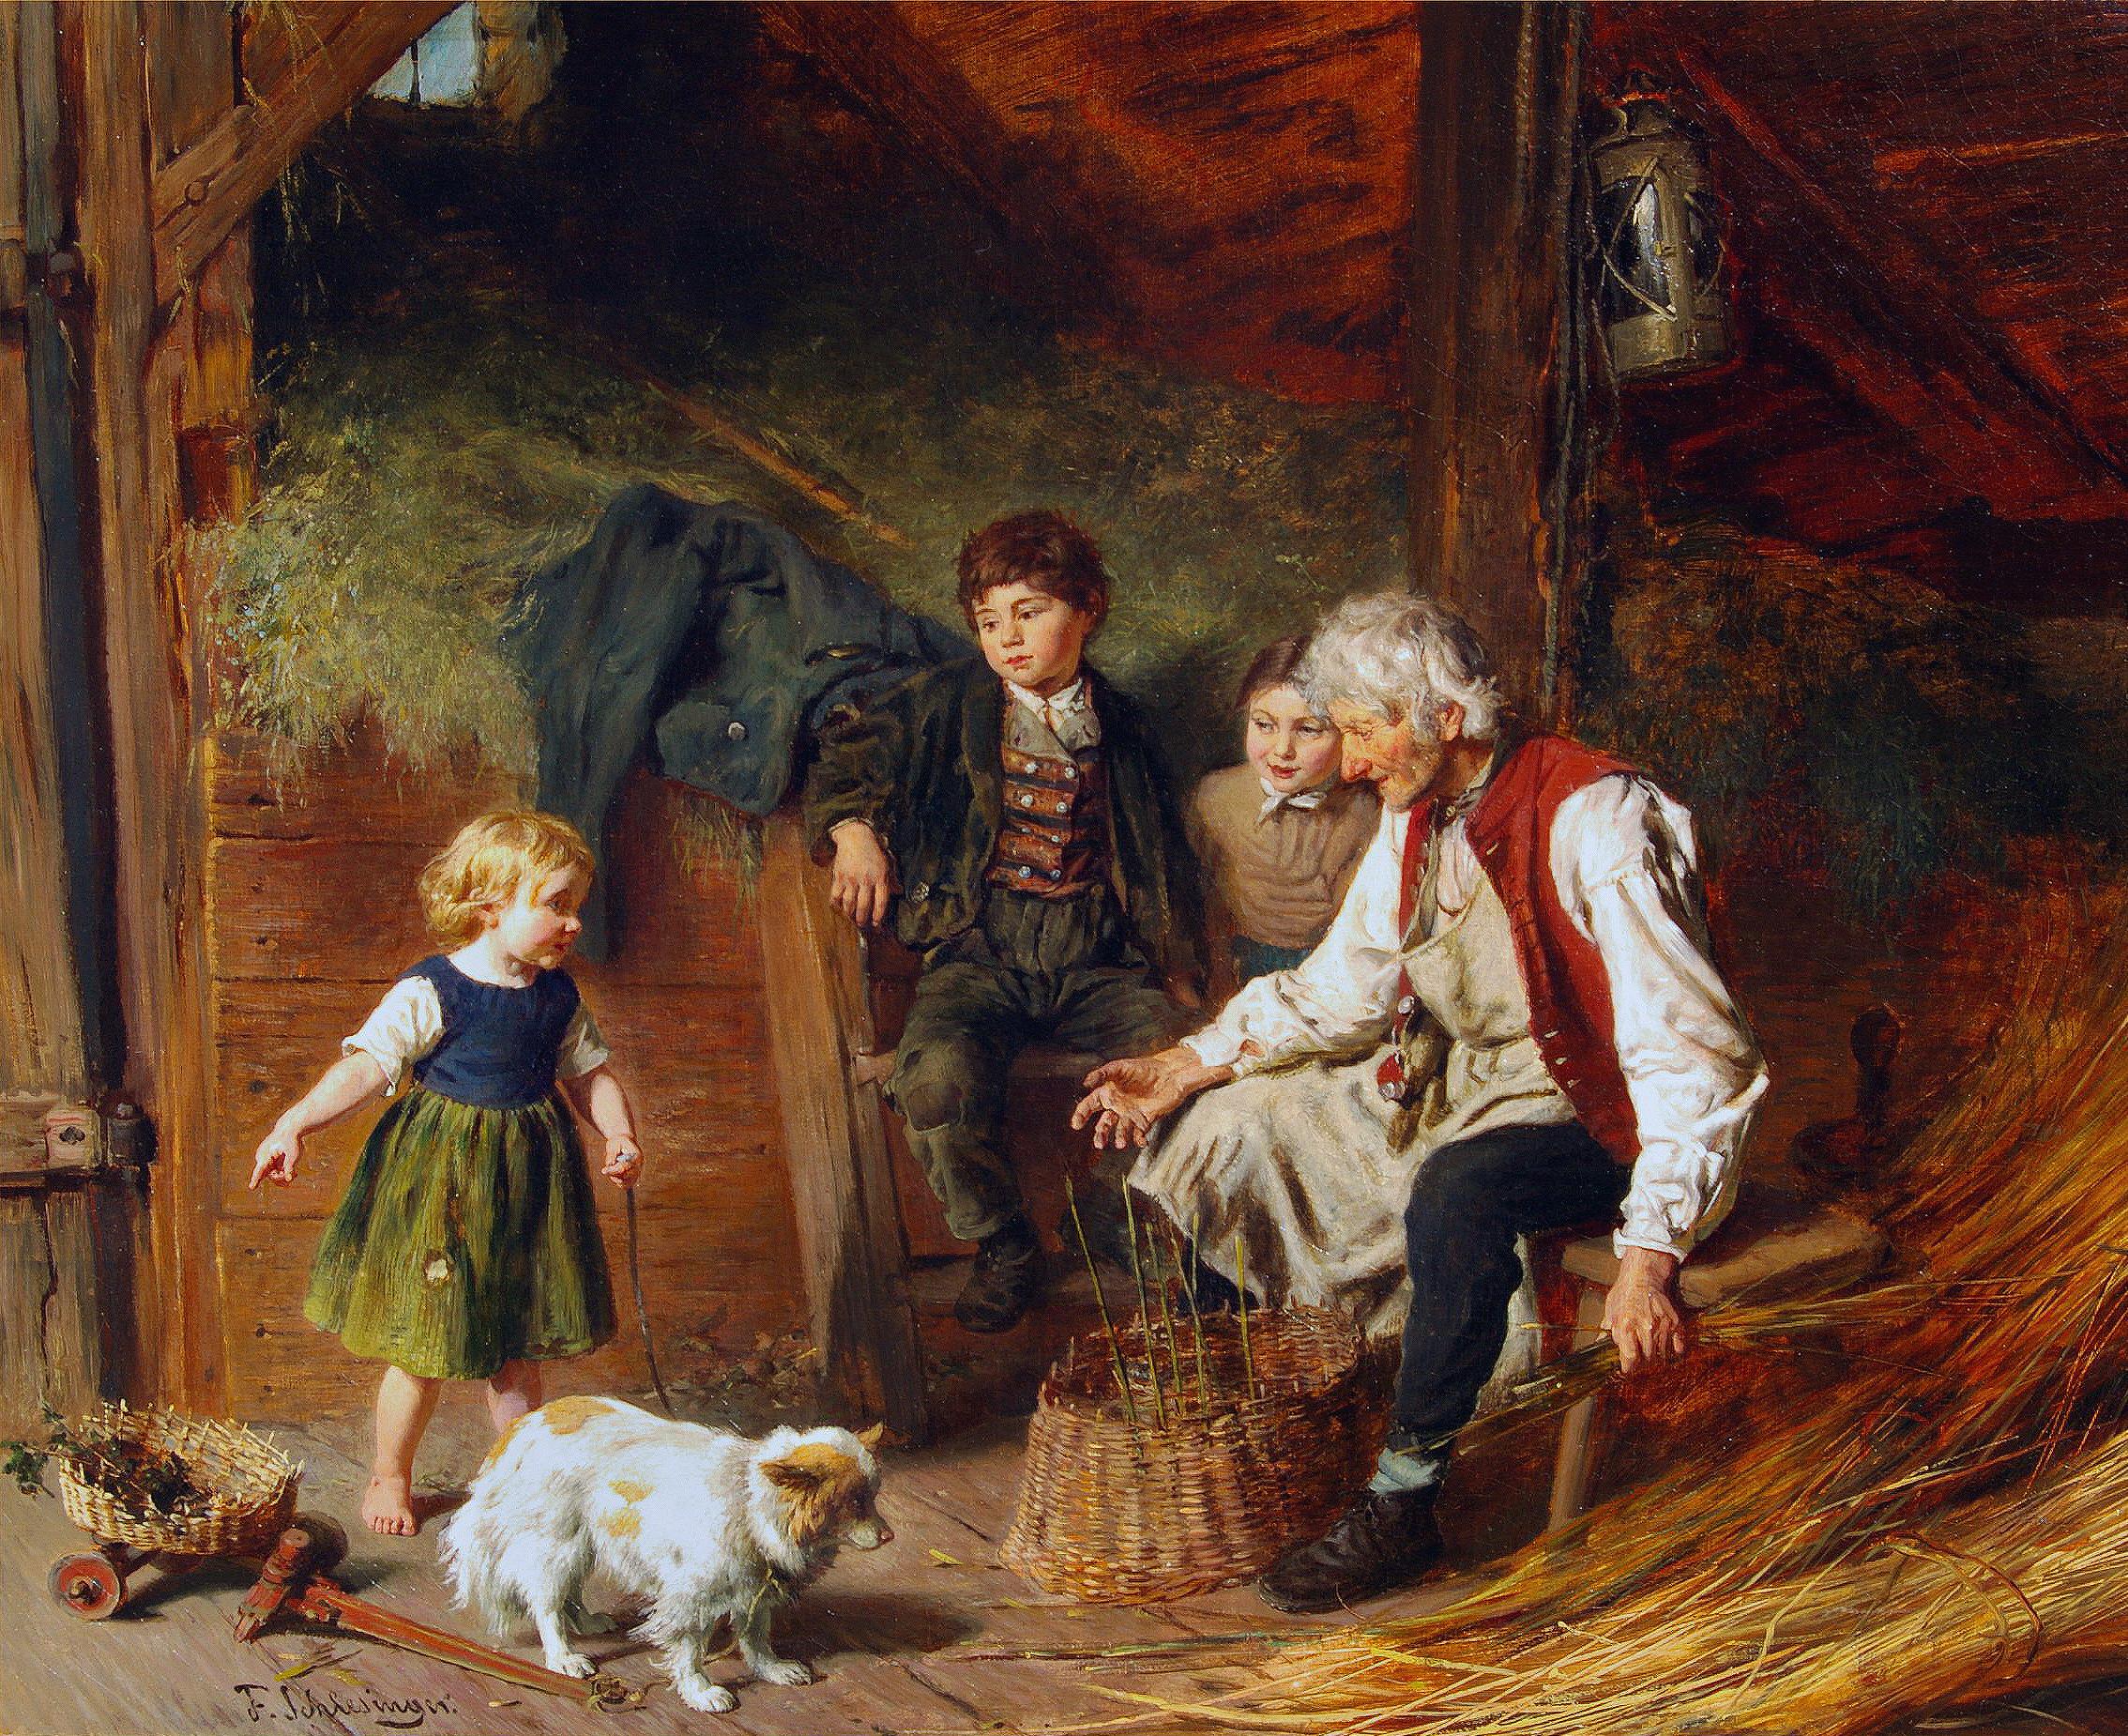 Visiter l'atelier de Grandpa's - Painting de Felix Schlesinger